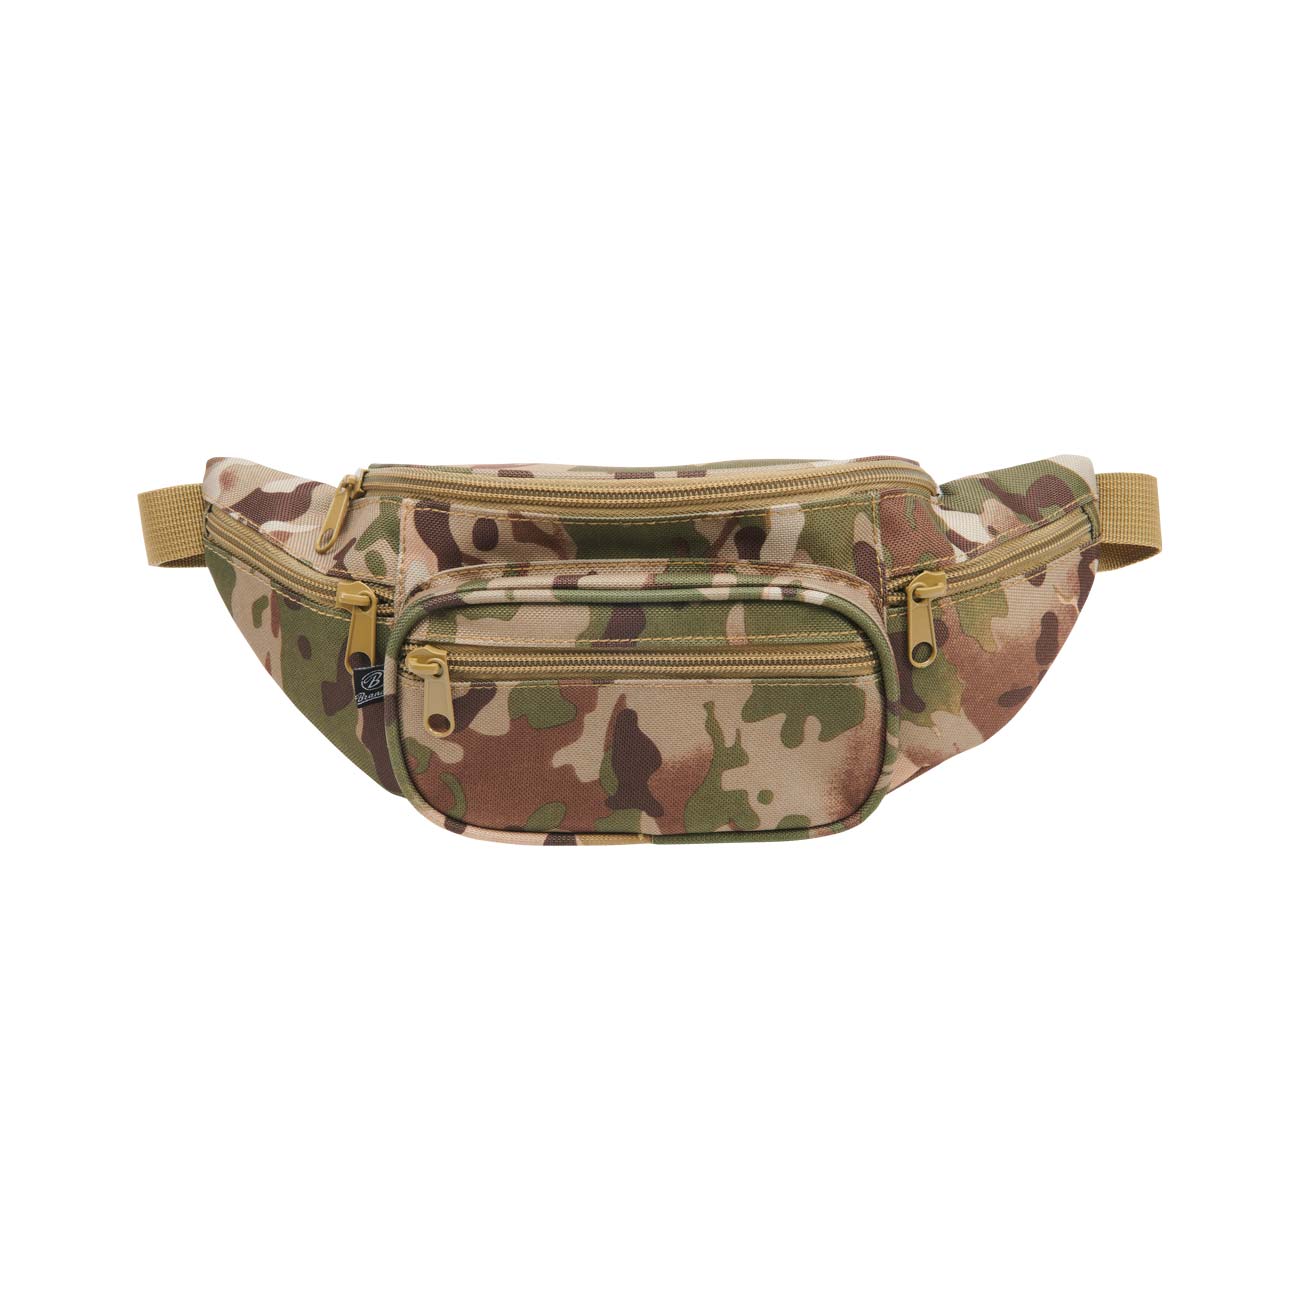 Bauchtasche Camouflage 3x Rv Fächer Gürteltasche Hüfttasche Tarnfarbe Army Sport 